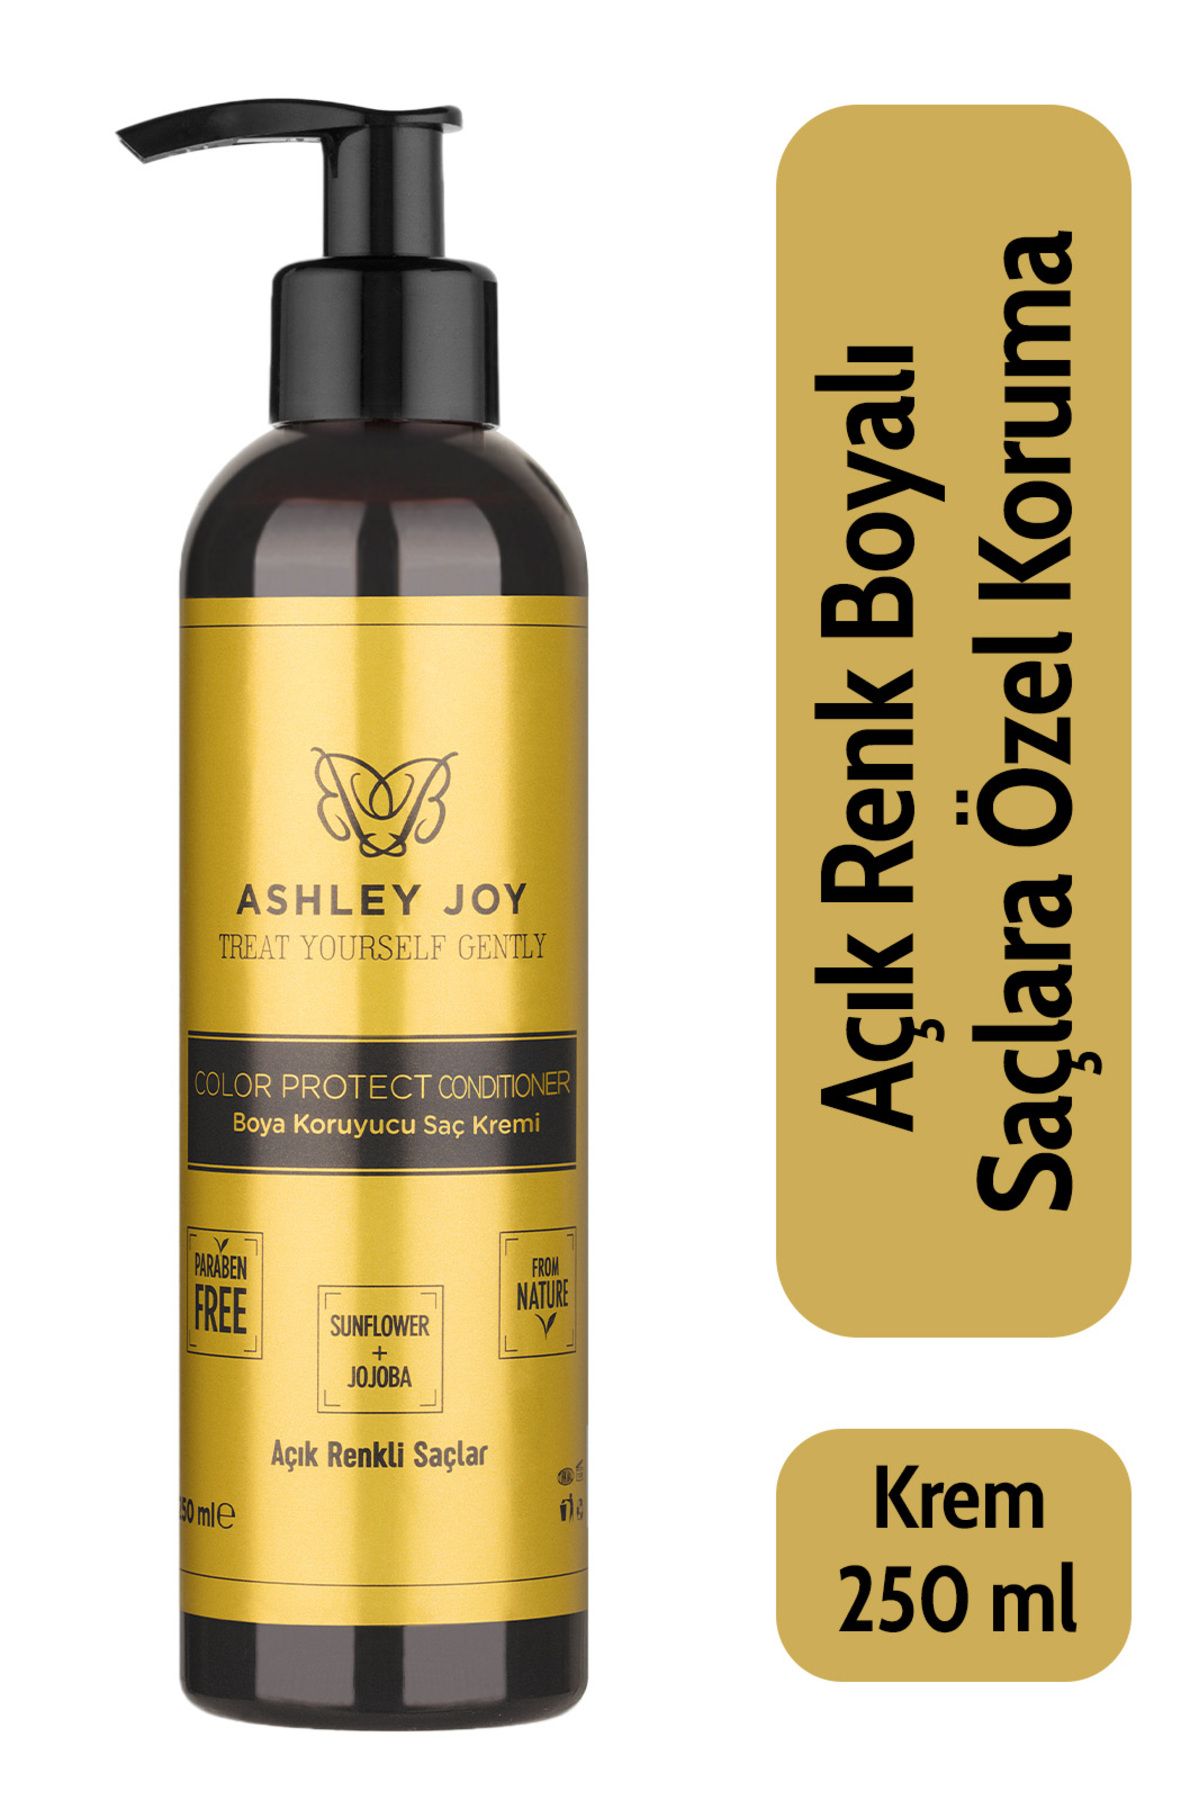 Ashley Joy Açık Renk Boyalı Saçlara Özel Jojoba Ve Badem Yağı Içeren Renk Koruyucu Saç Kremi 250 ml